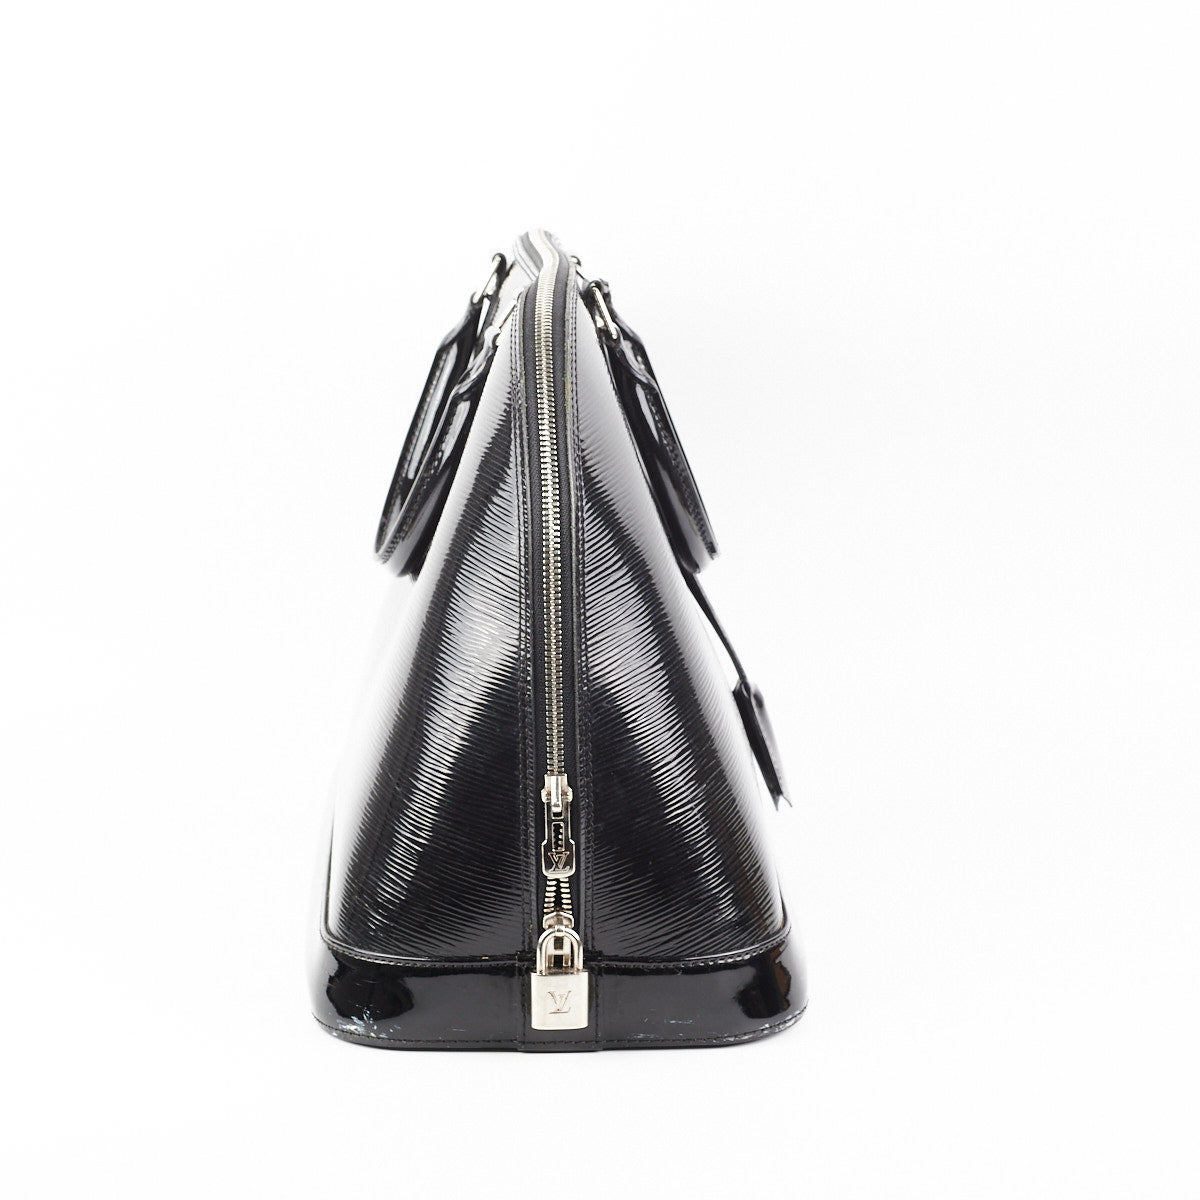 Louis Vuitton Epi Leather Alma GM – AMUSED Co